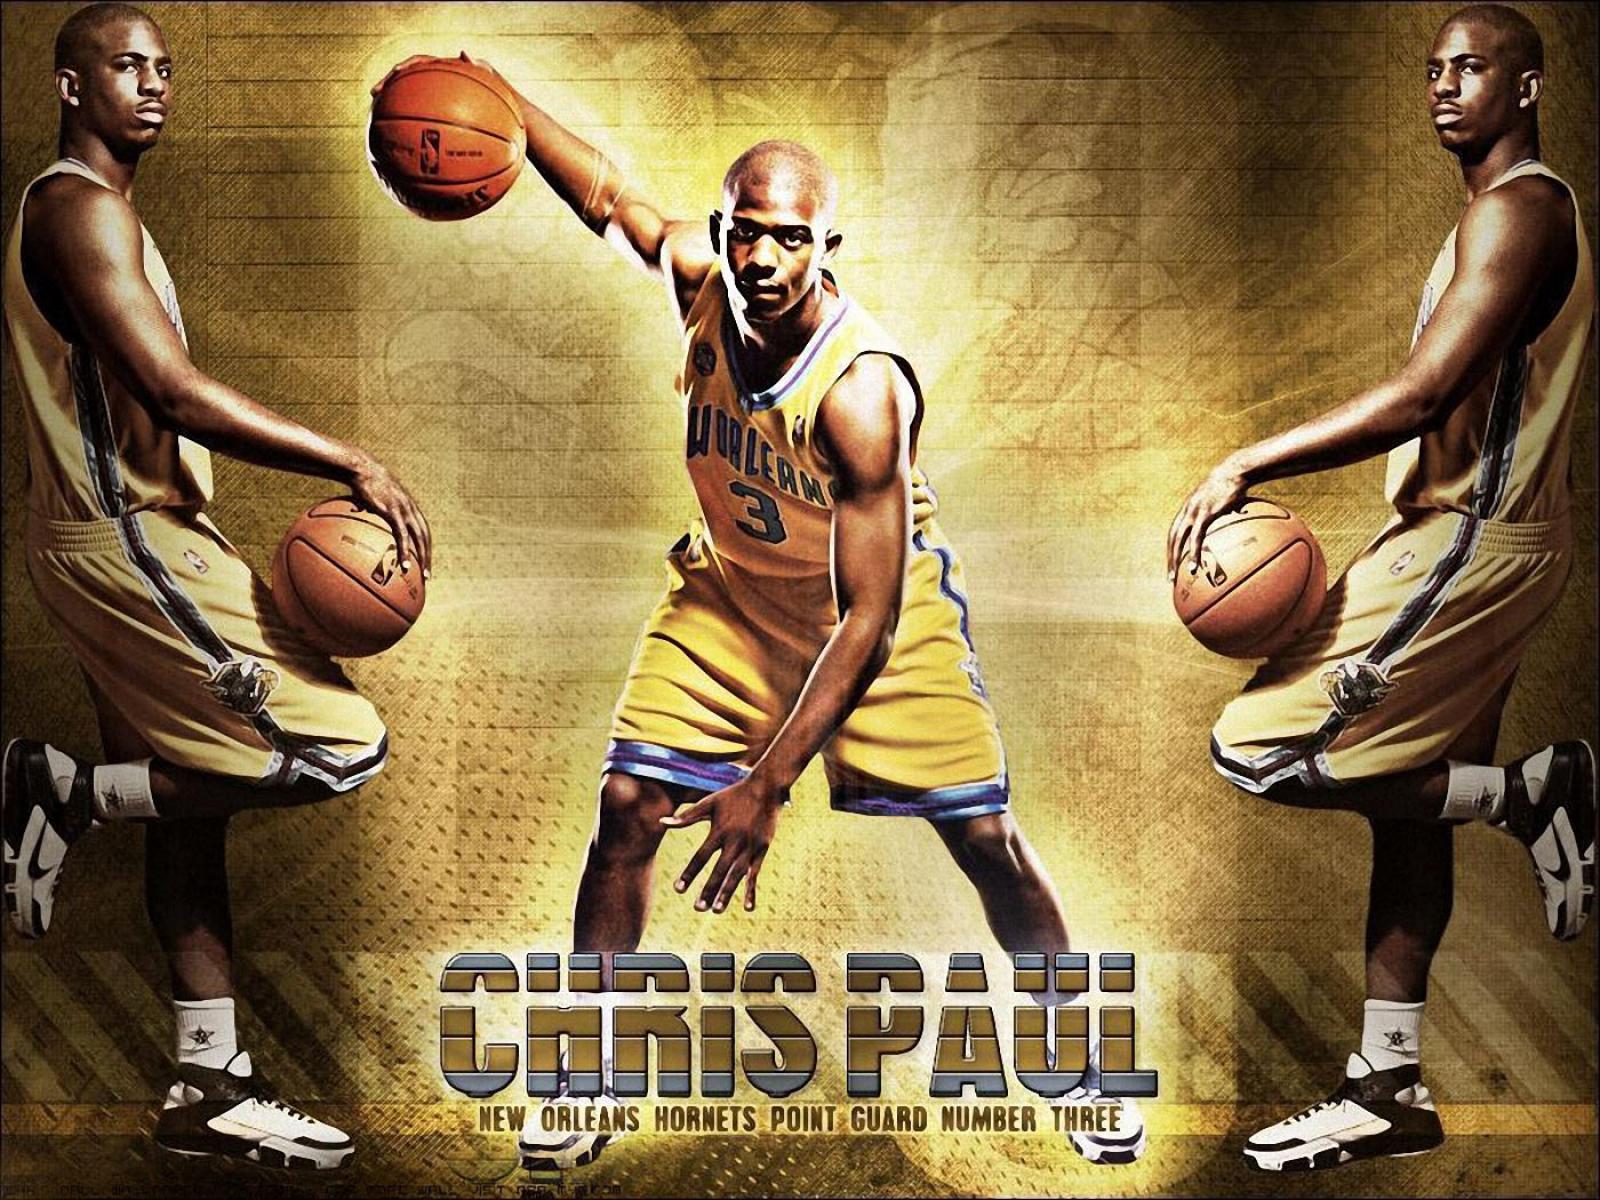 Chris Paul Clippers Wallpaper Hdwallpaper
new Chris - Basketball Player Poster - HD Wallpaper 